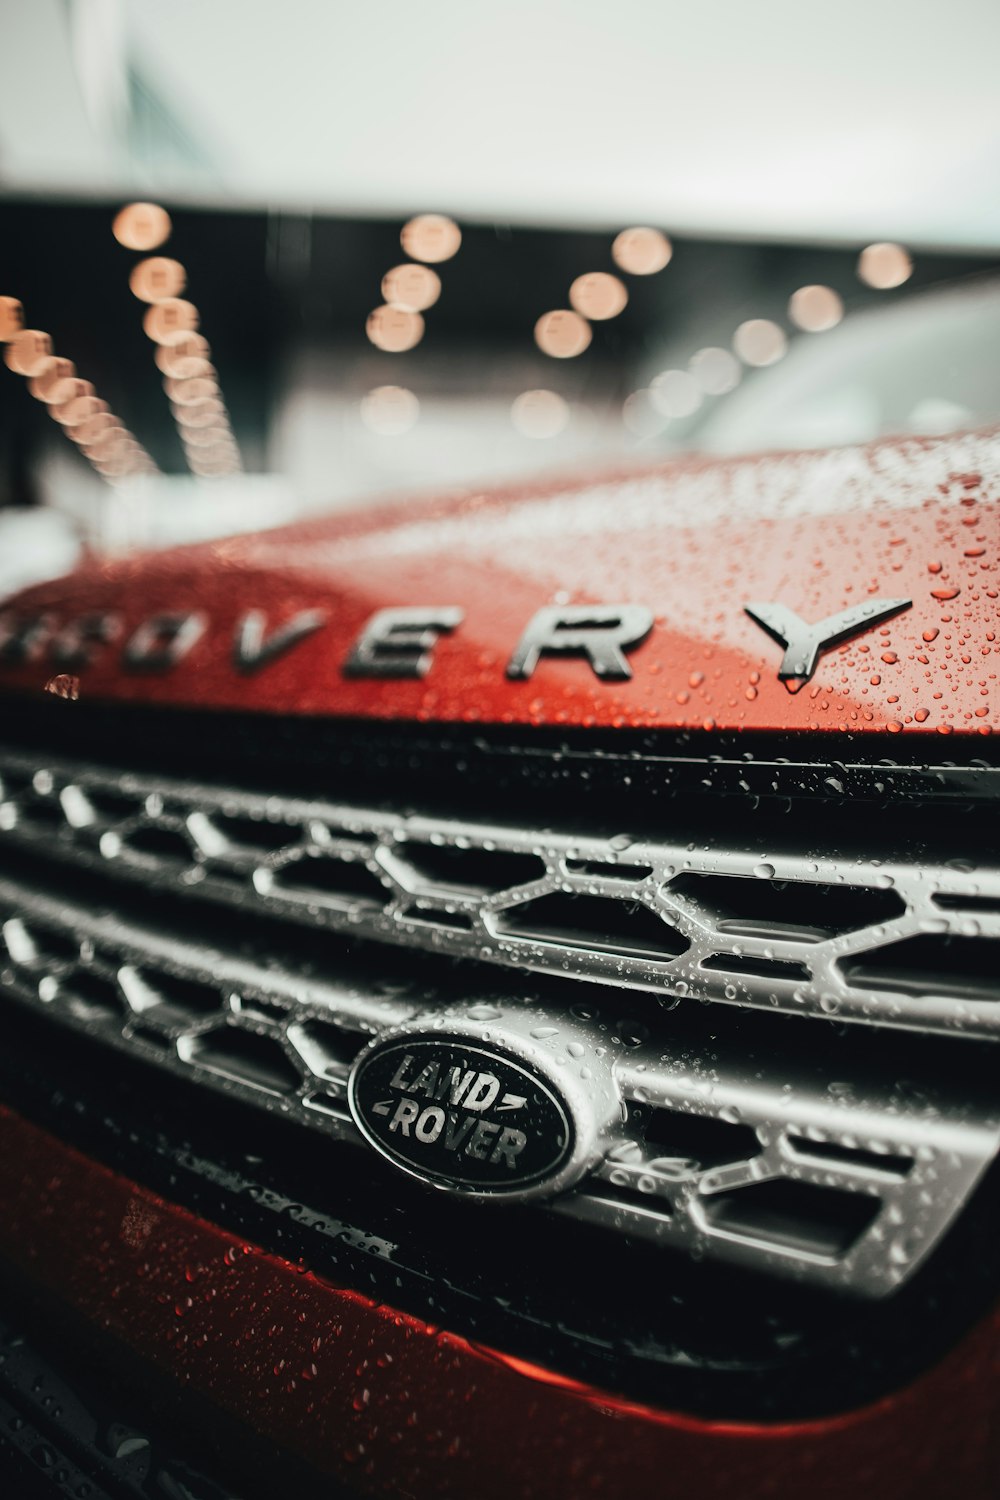 Foto mit flachem Fokus des roten Range Rover Land Rover-Autos